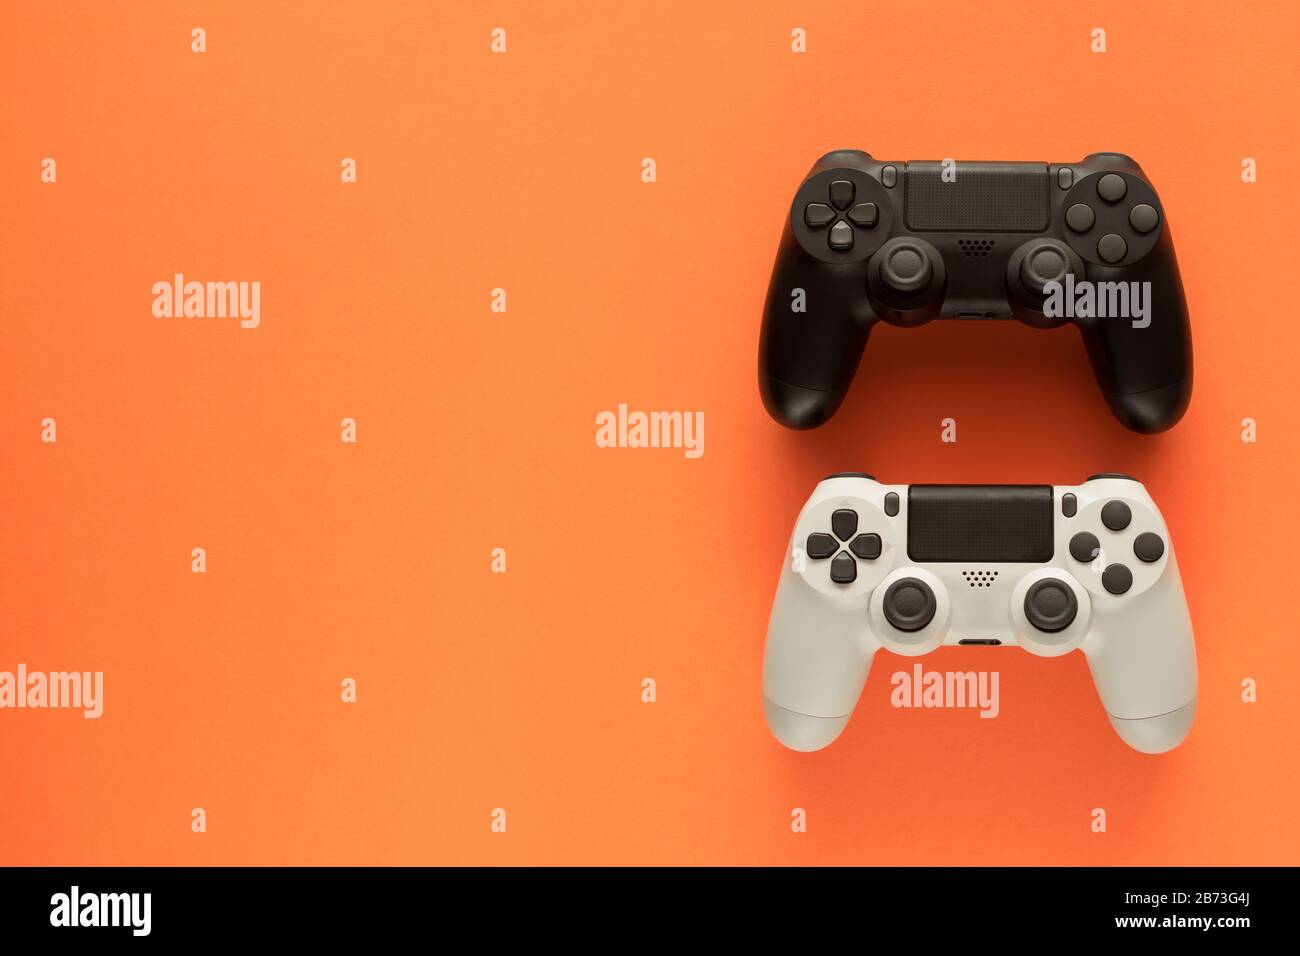 Stock-Foto von zwei Gamepads auf orangefarbenem Hintergrund und Kopierbereich auf der linken Seite Stockfoto